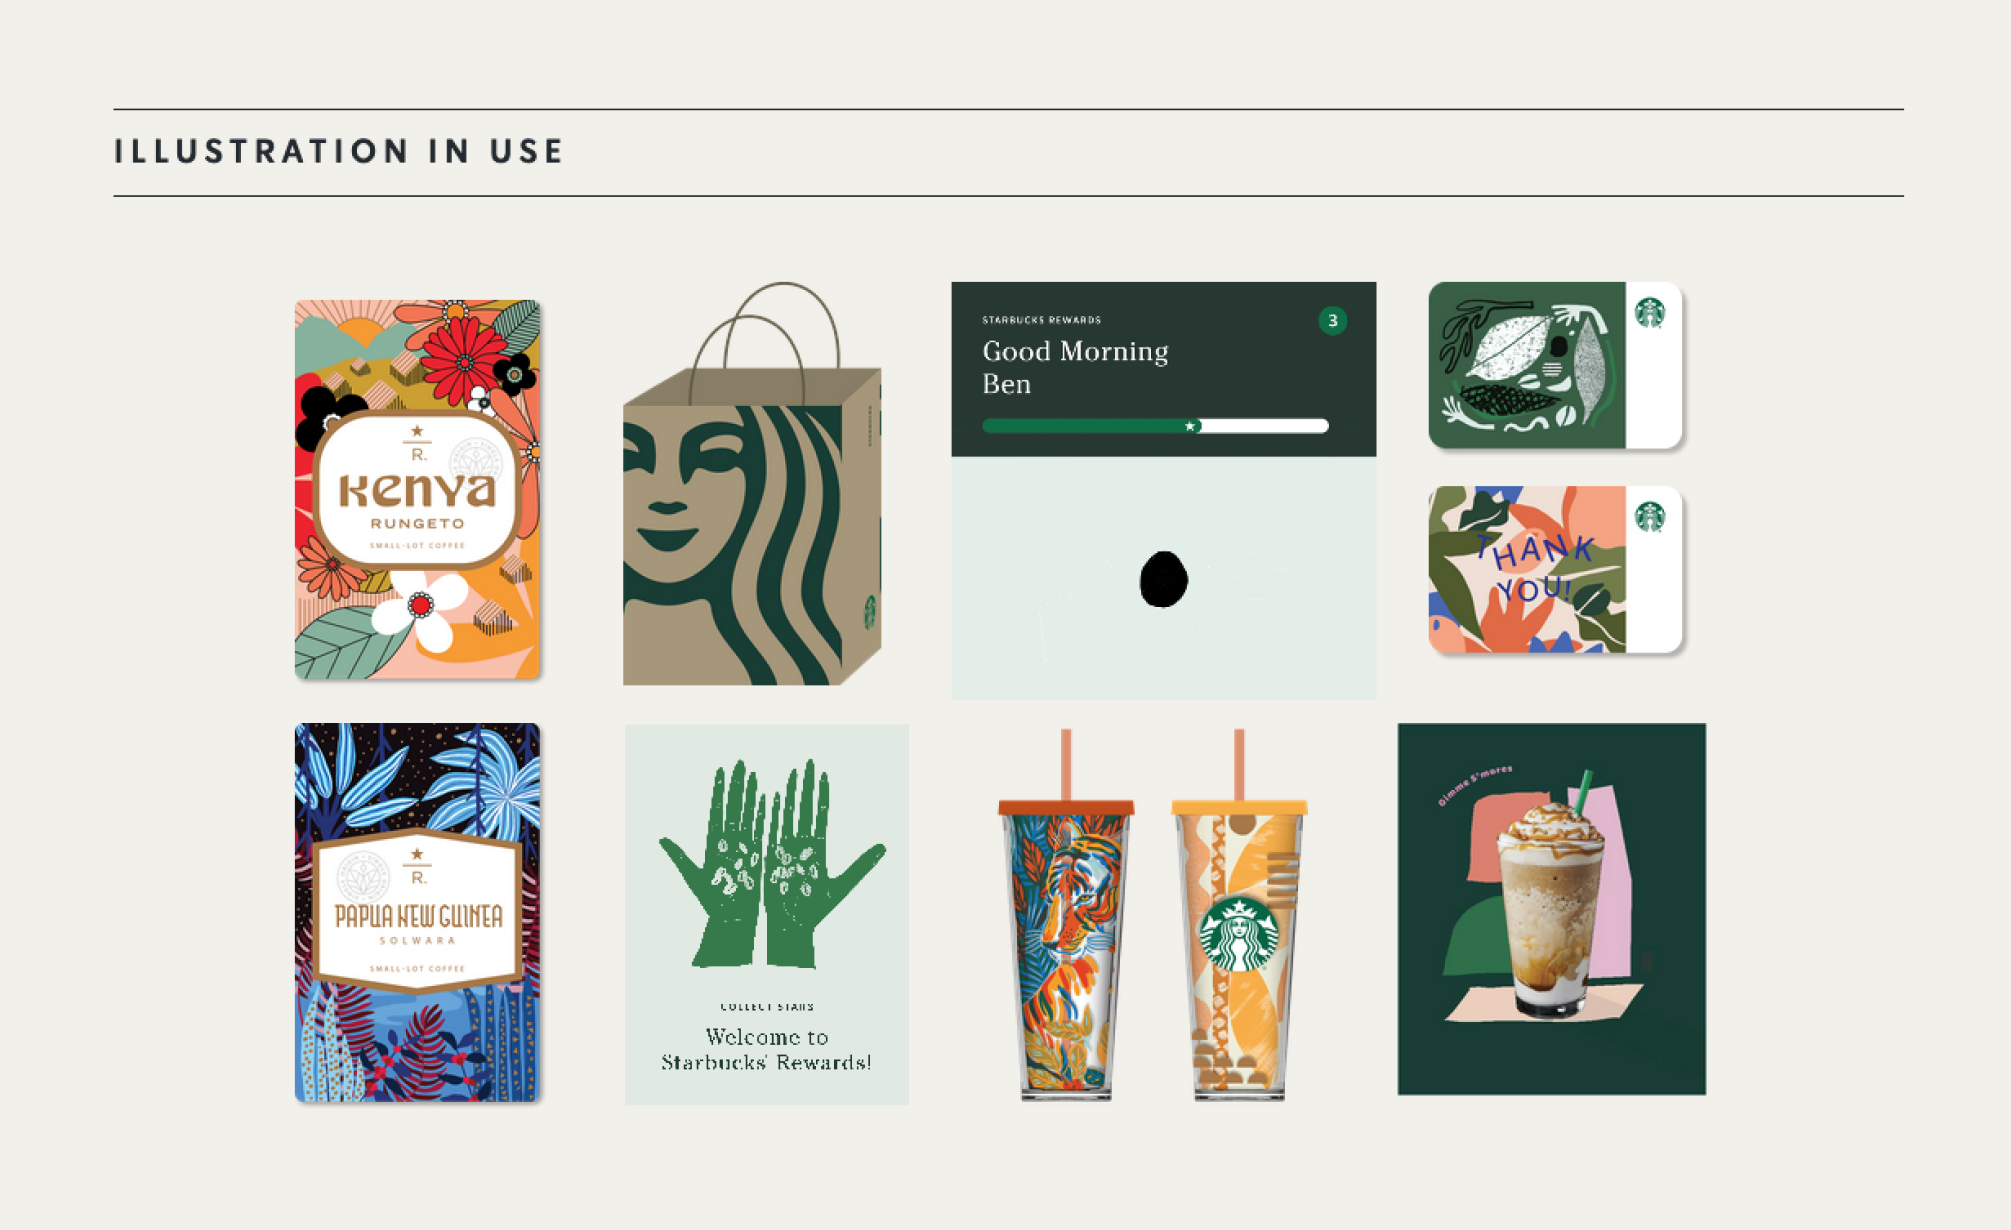 Fragment strony internetowej Starbucks. Na grafice znajdują się opakowania, karty podarunkowe, fragmenty strony i menu, które przedstawiają, w jaki sposób są używane ilustracje.